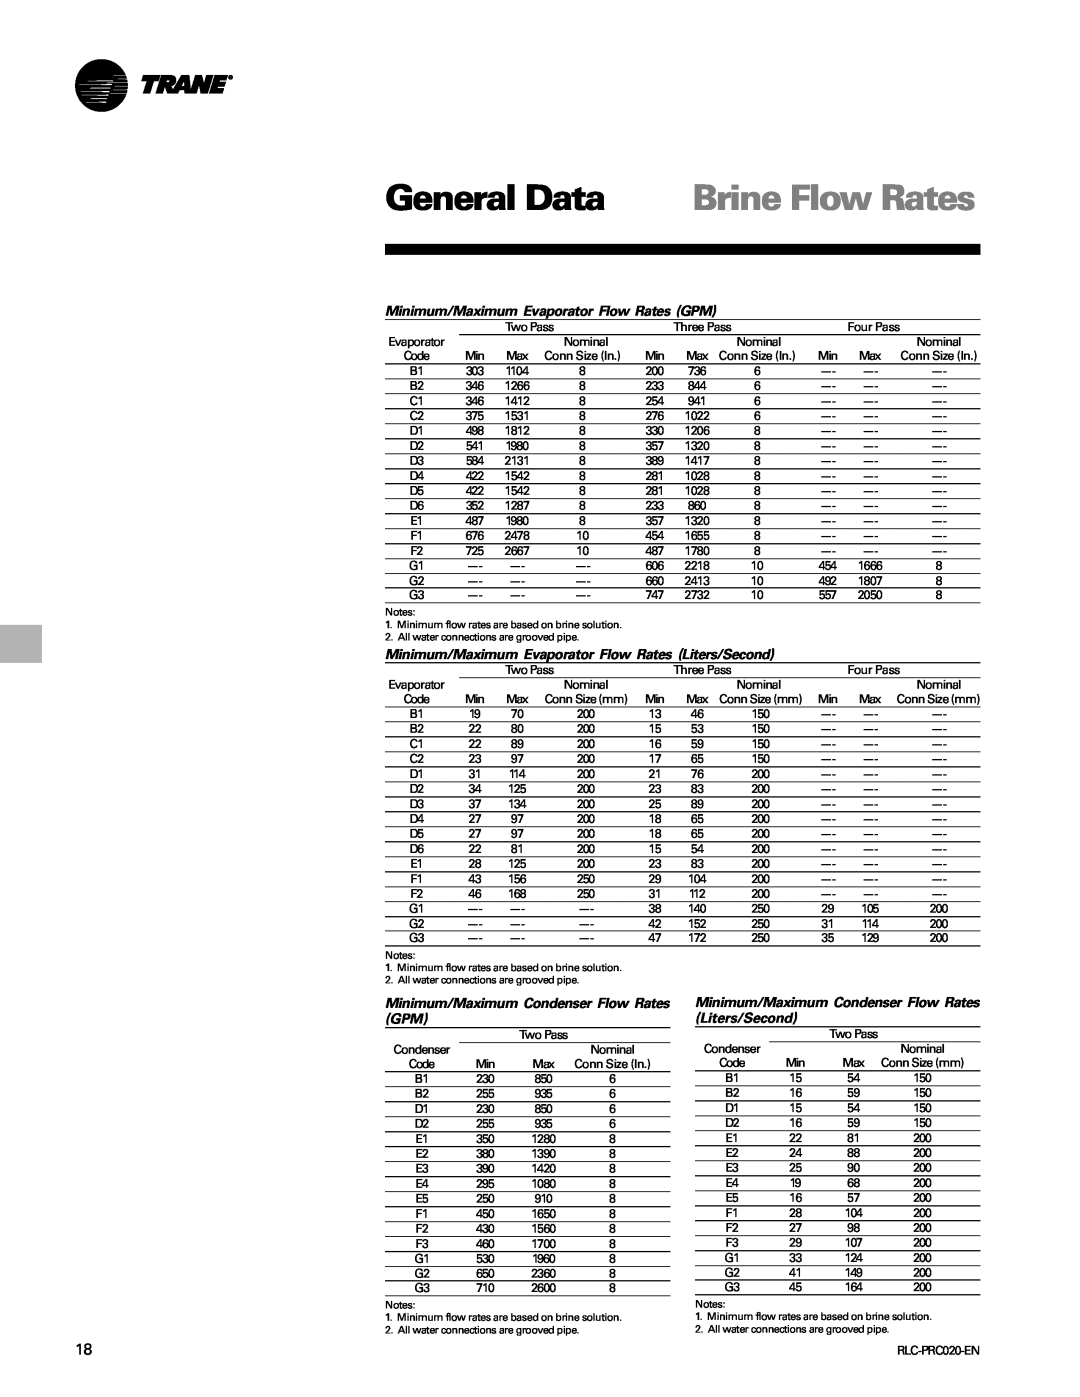 Trane RTHD manual Brine Flow Rates, General Data, Minimum/Maximum Evaporator Flow Rates GPM 